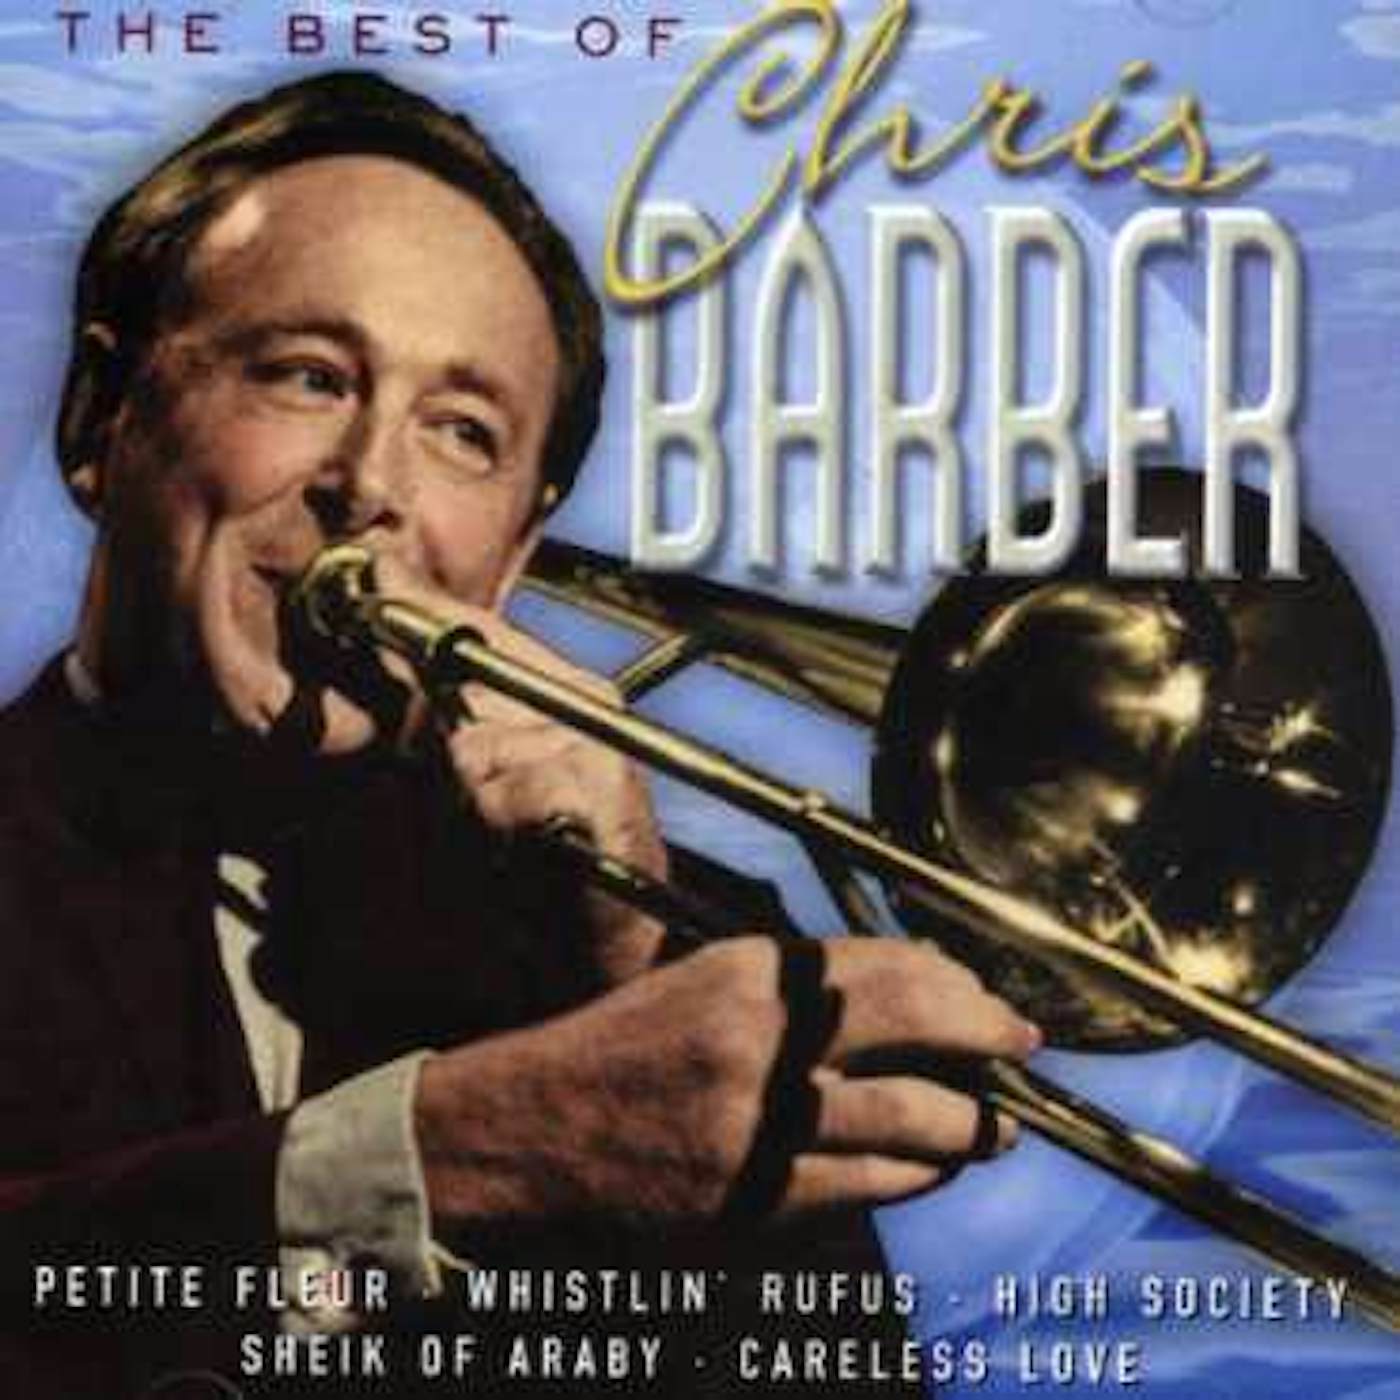 Chris Barber BEST OF CD